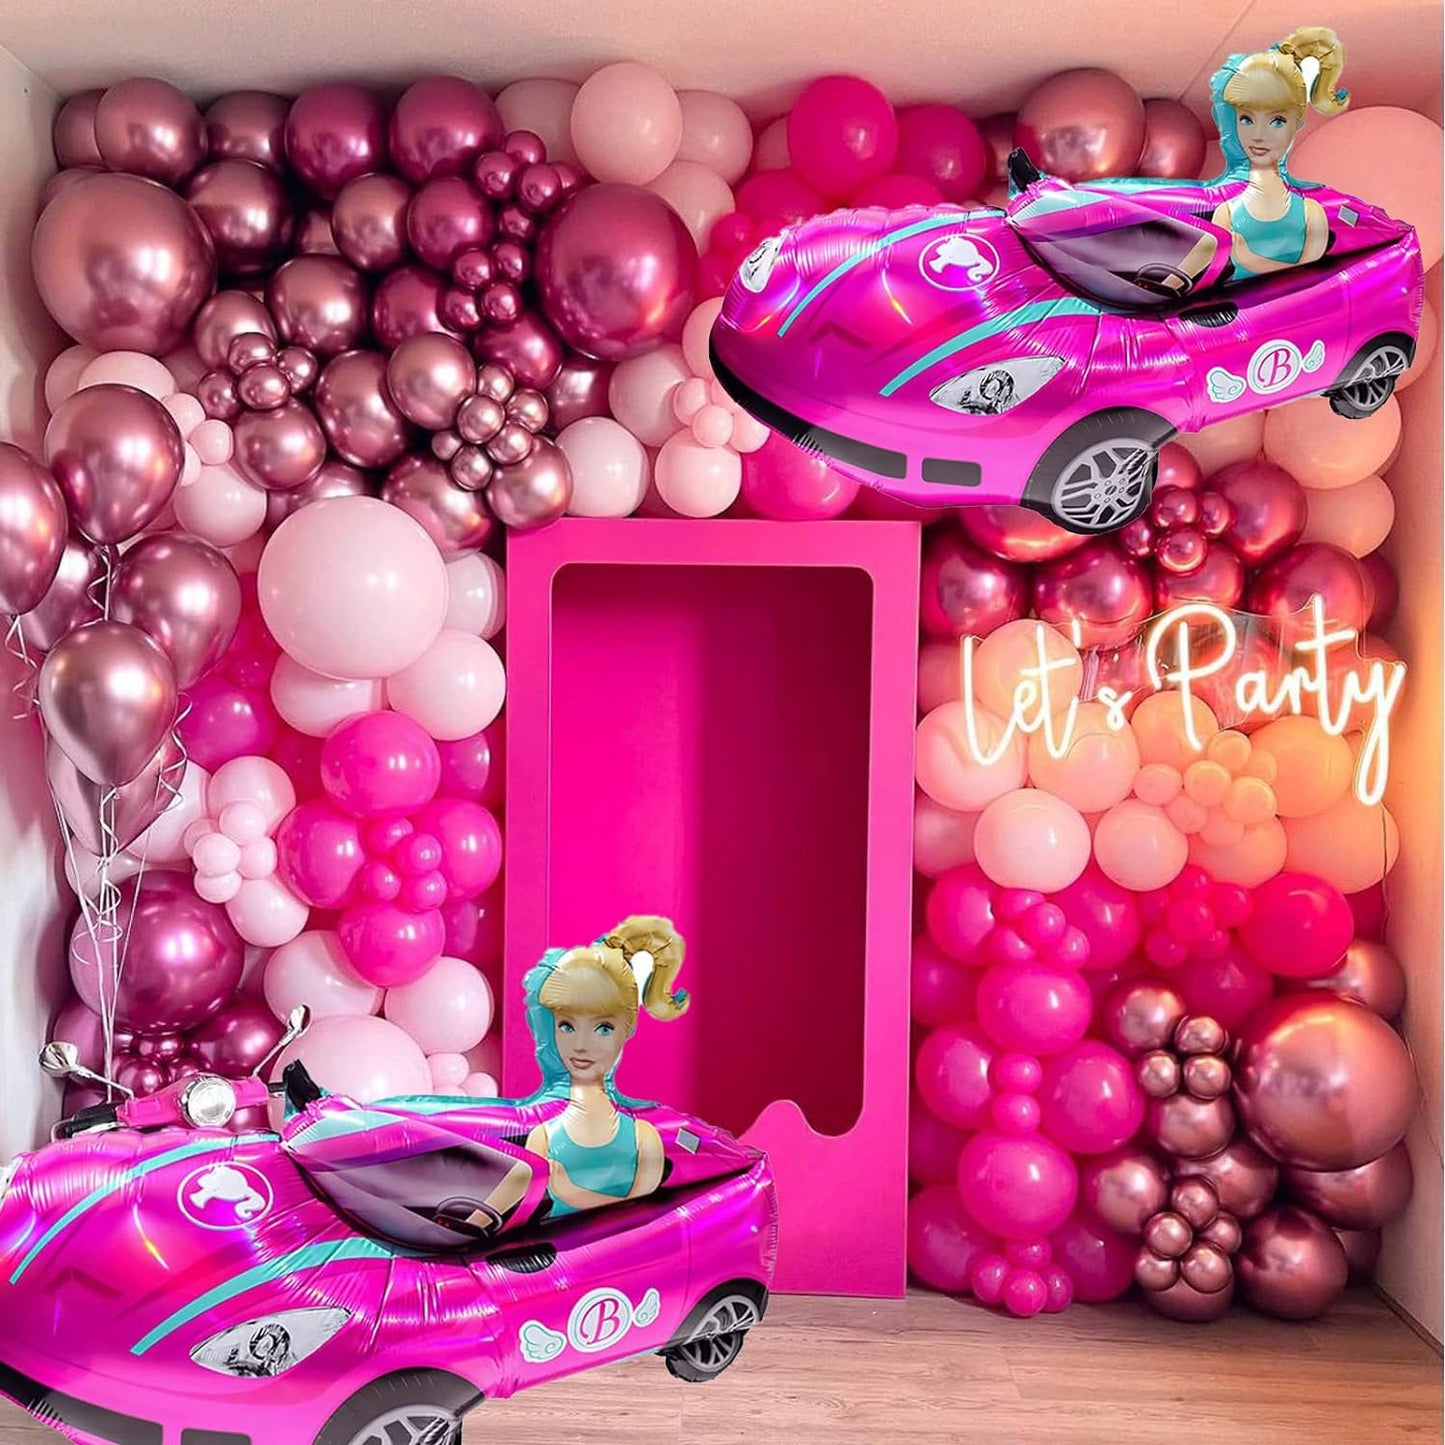 Barbie Car Foil Balloon